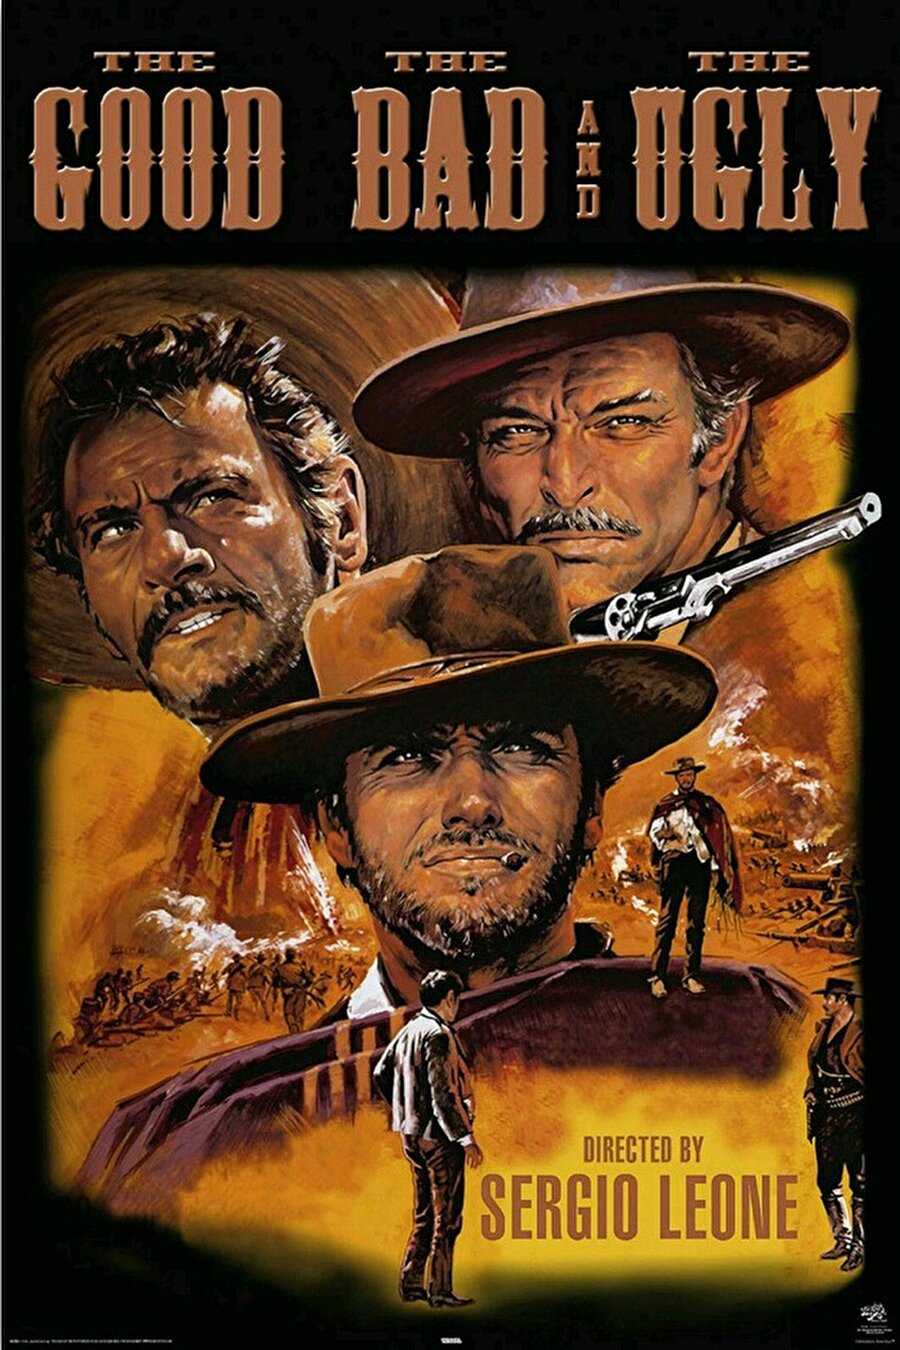 yi, Kötü ve Çirkin, 1966 yapımı Sergio Leone'nin yönettiği Spagetti Western filmidir. Başrollerini Clint Eastwood, Lee Van Cleef ve Eli Wallach paylaşmaktadır. 